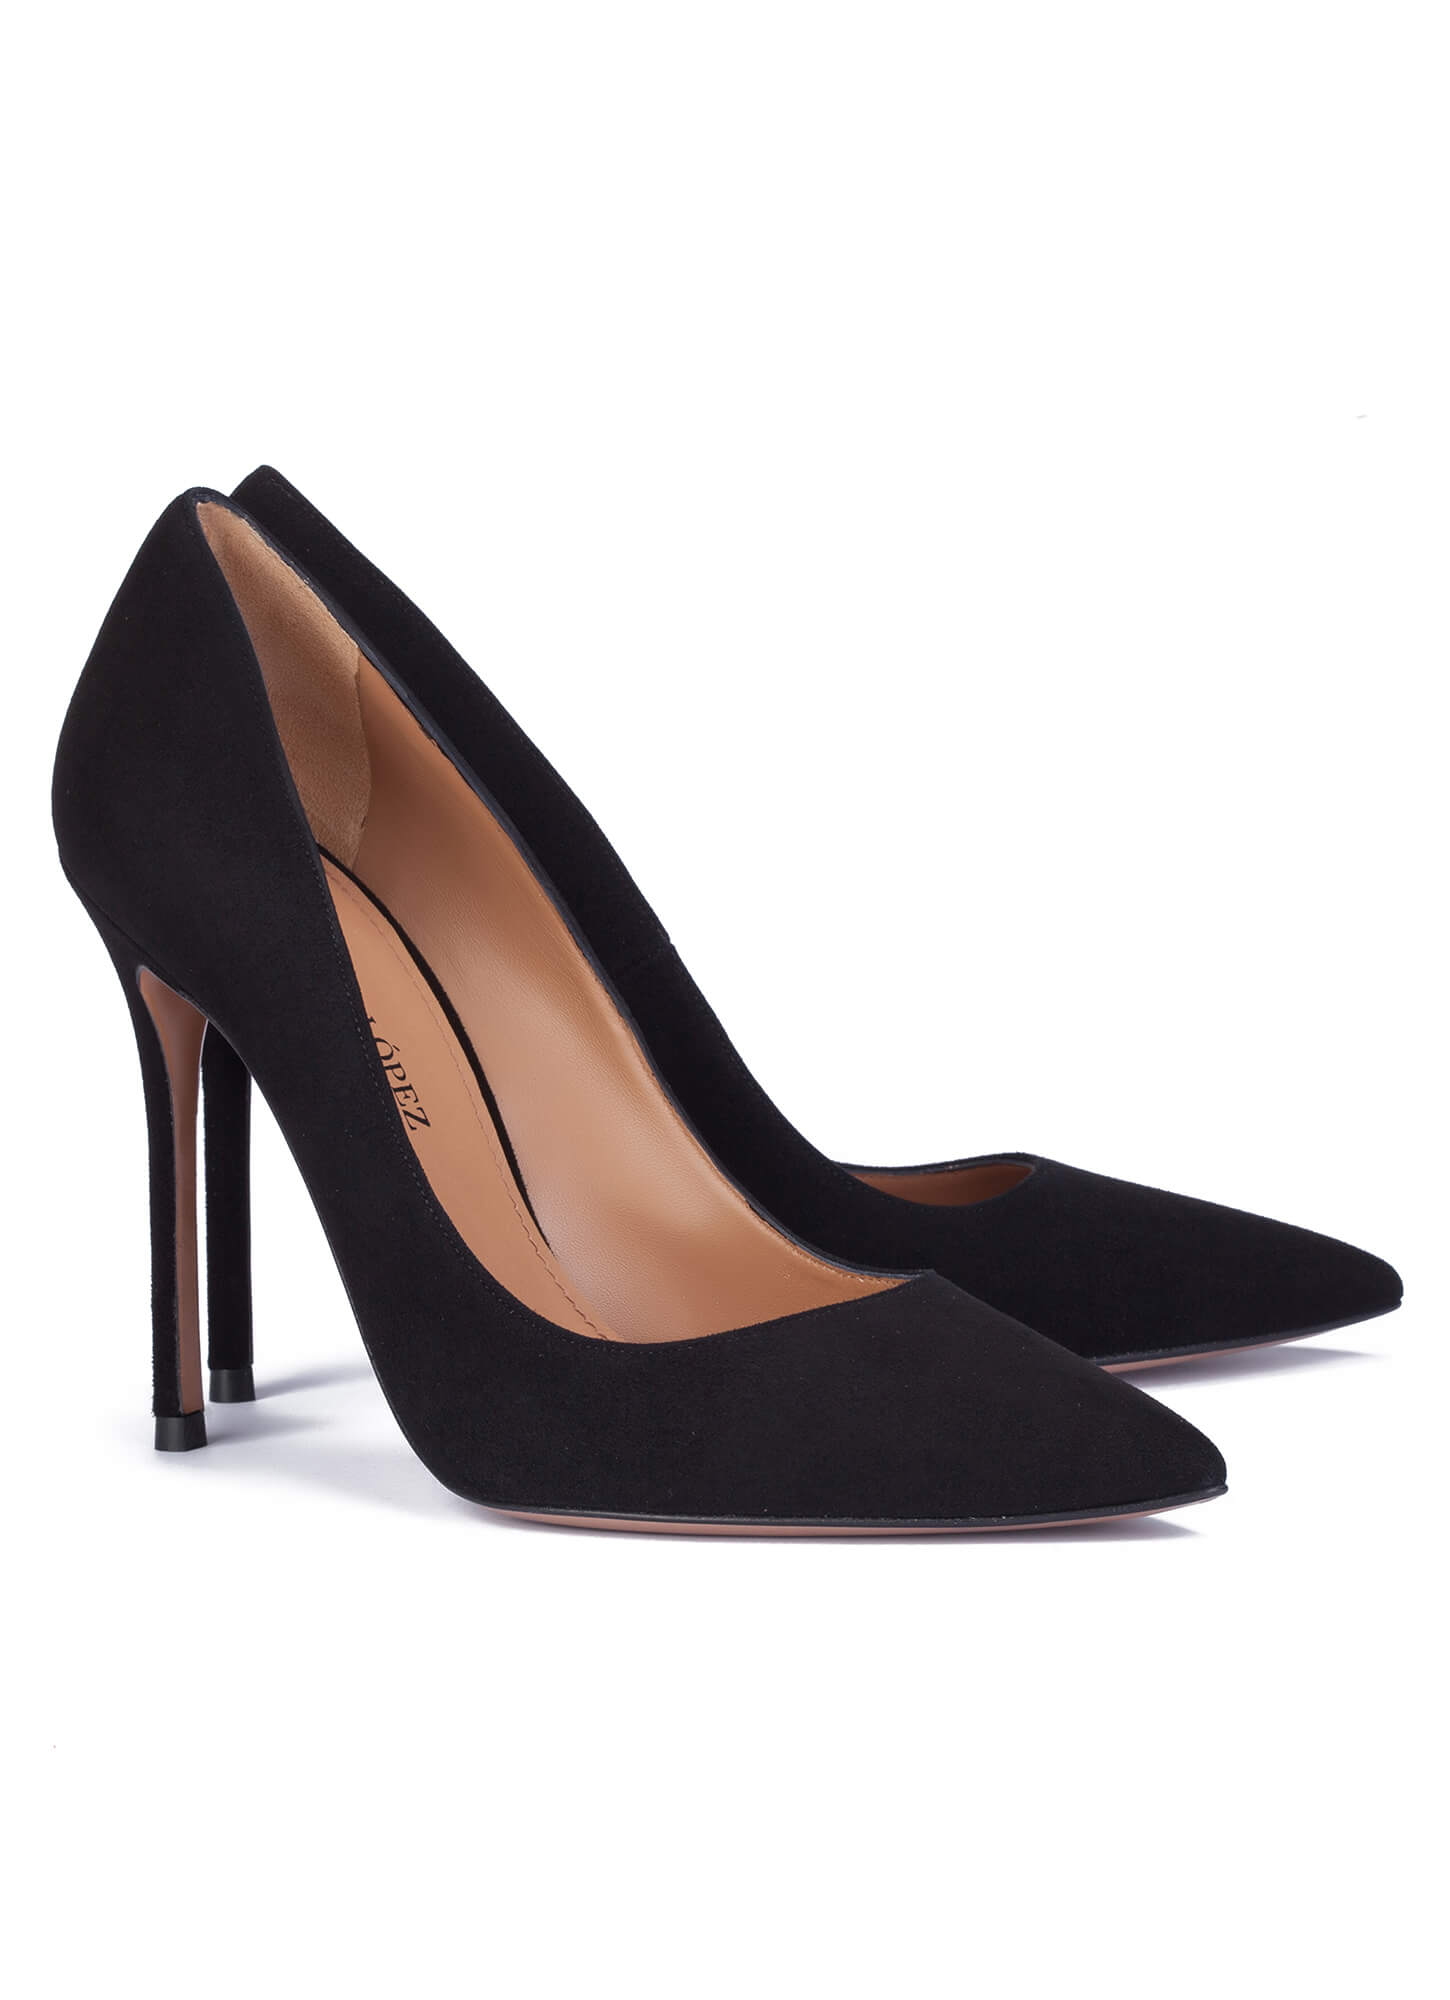 High heel pumps in black suede .